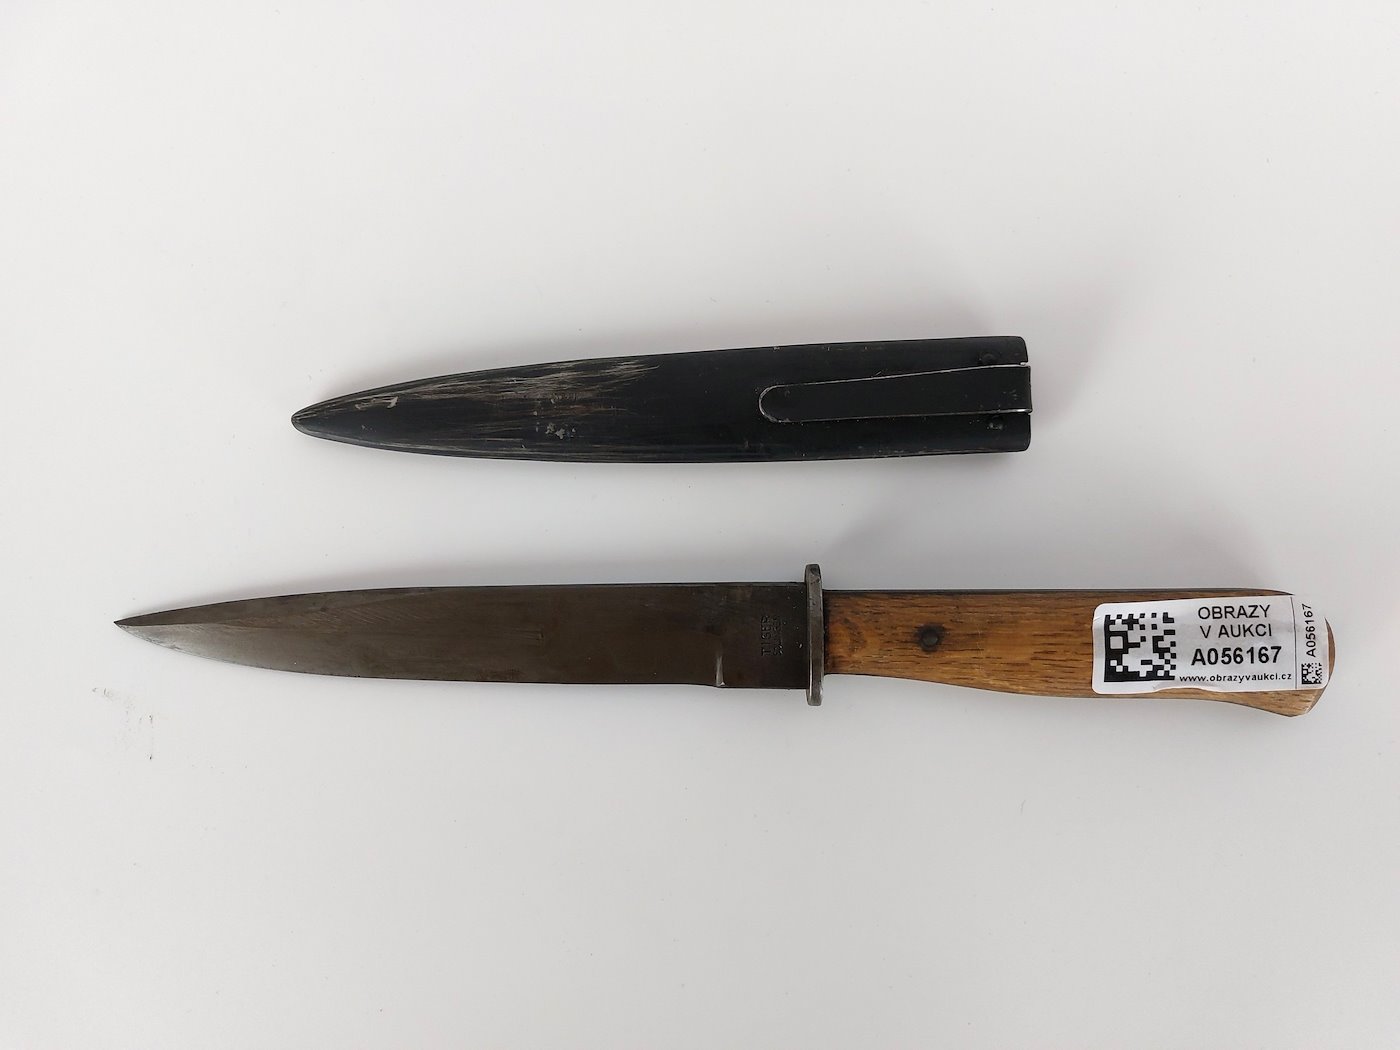 Neznámý autor - Útočný nůž WH, firma Tiger, Solingen, prvotřídní stav